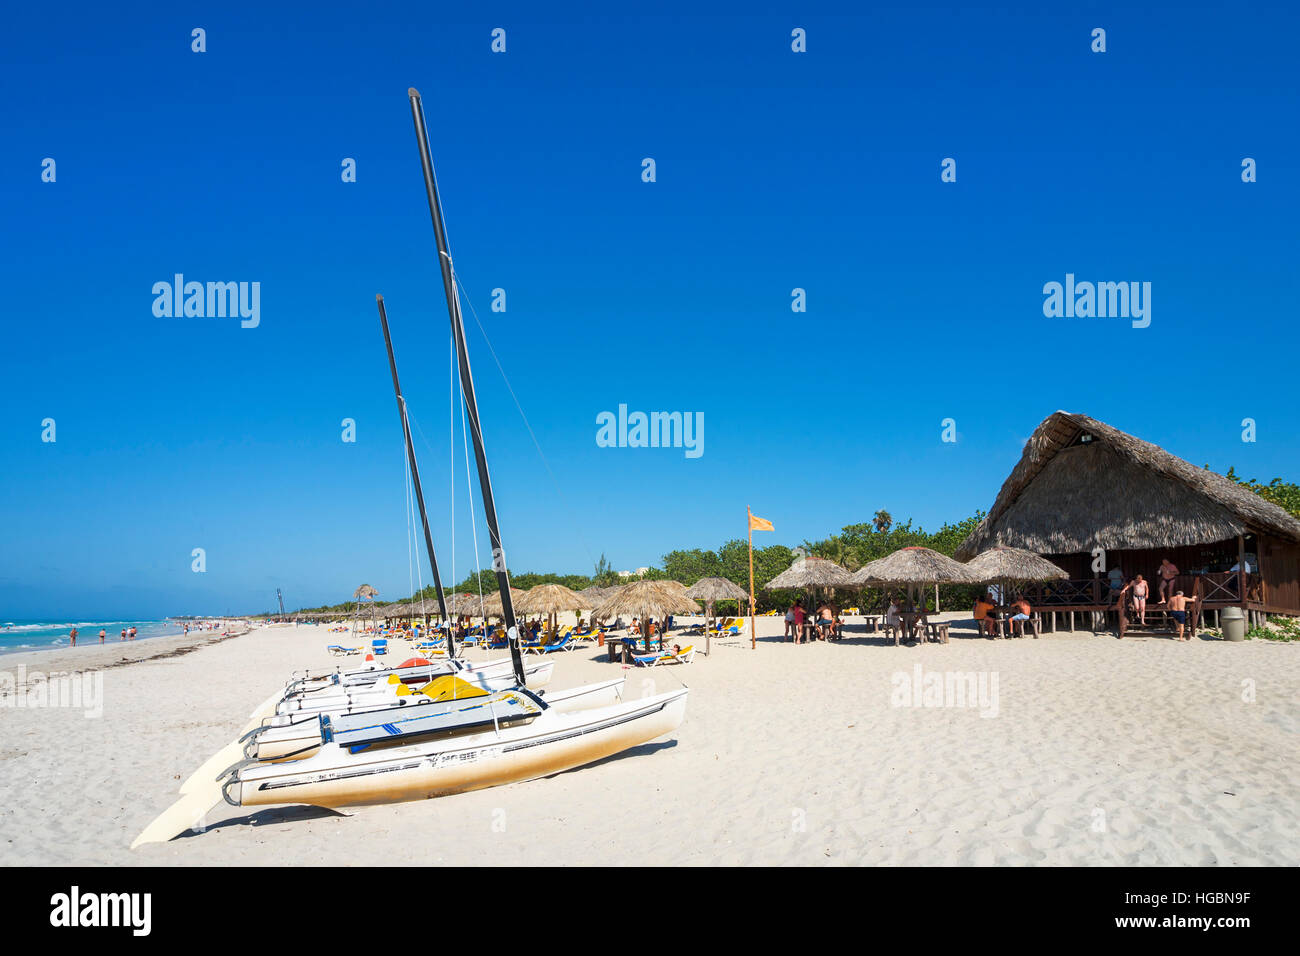 La plage de Varadero, Cuba. Plage et bar de plage. Banque D'Images